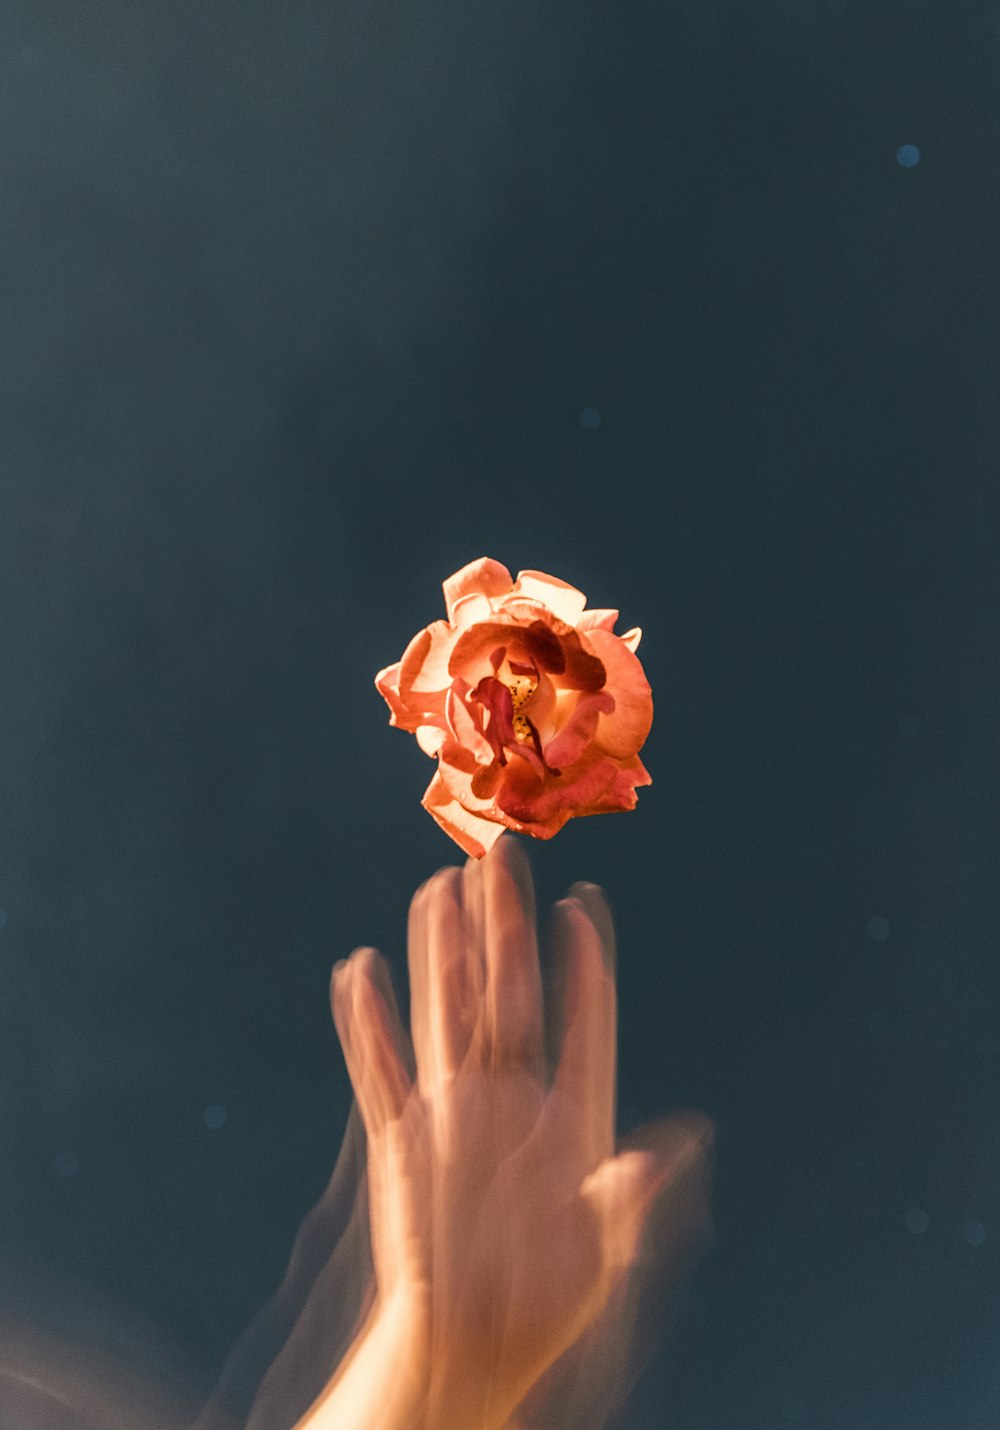 オレンジ色のバラの花を投げる人